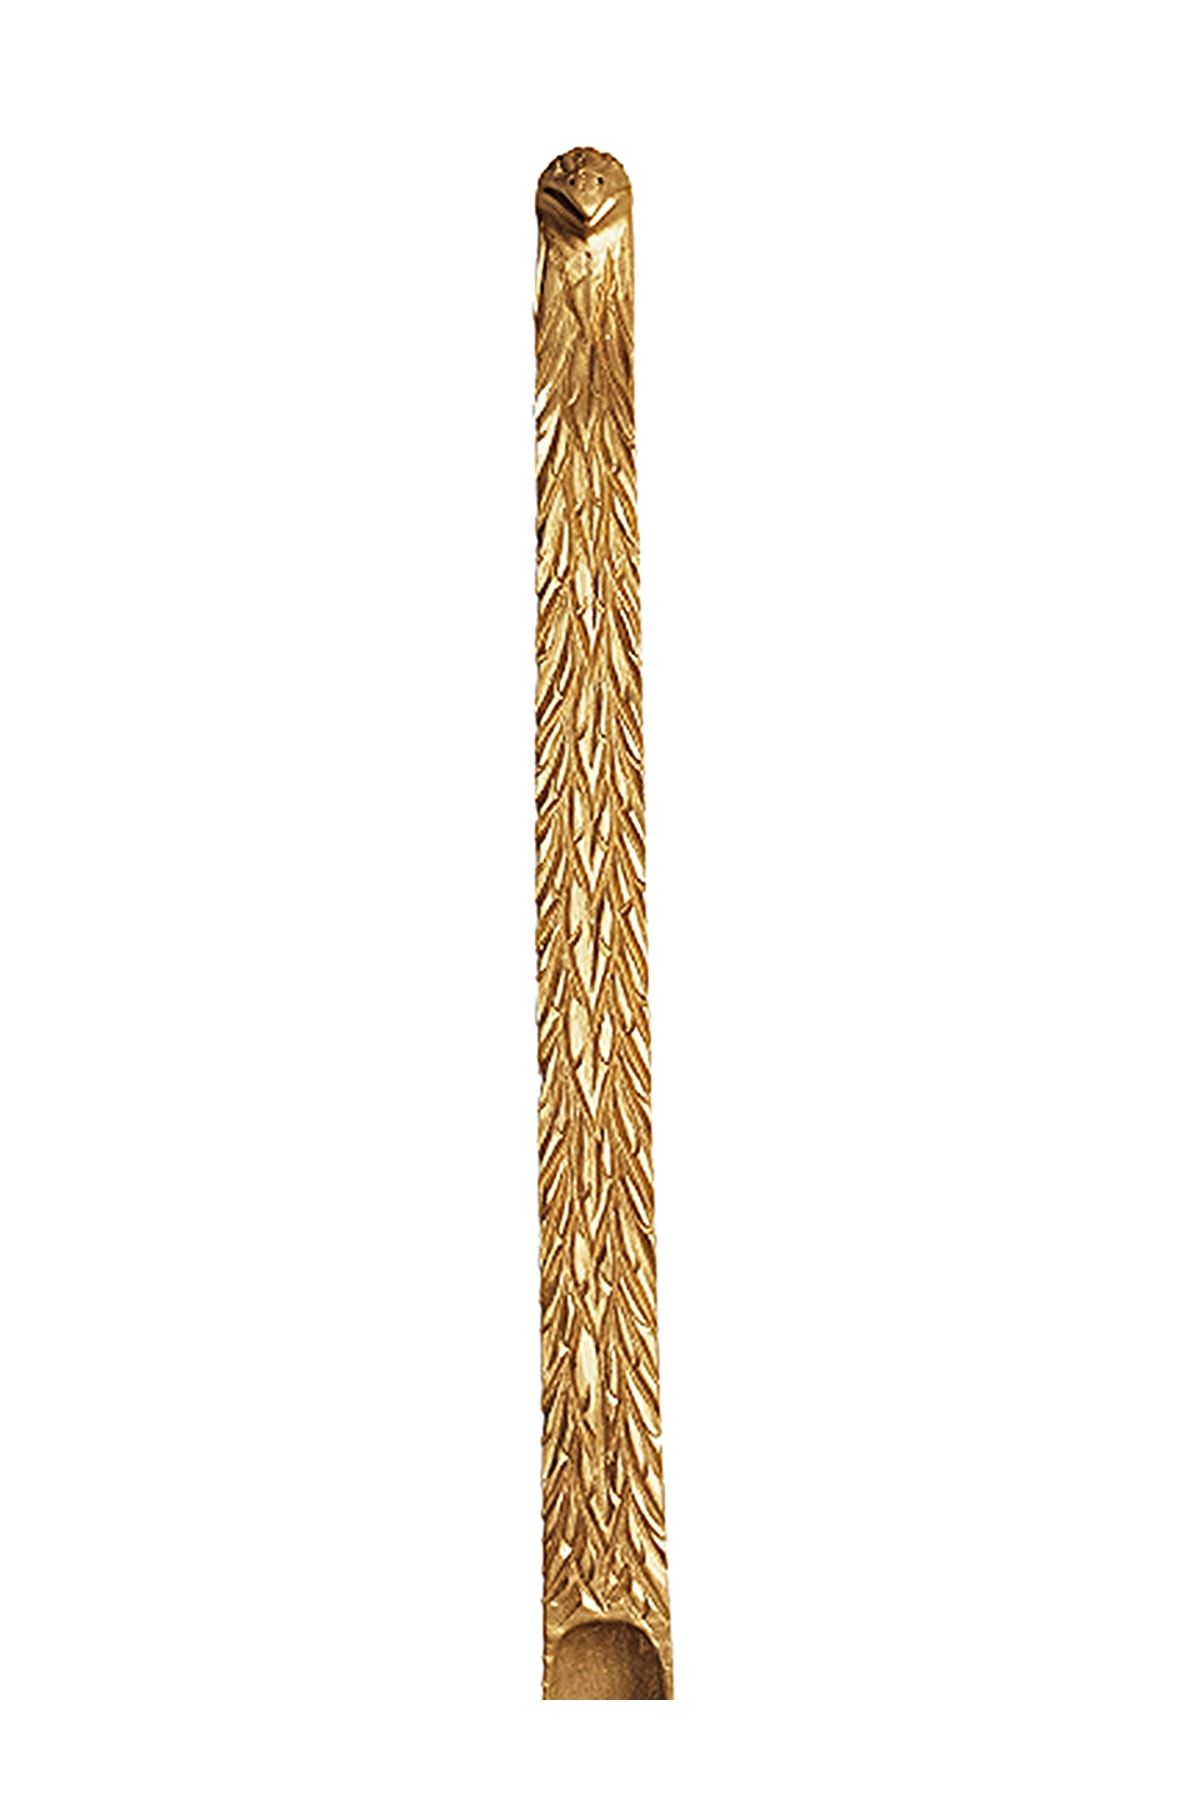 ROZASSHOME Kartal Model Altın Varak Ahşap El Oyması Ayakkabı Çekeceği 75 Cm